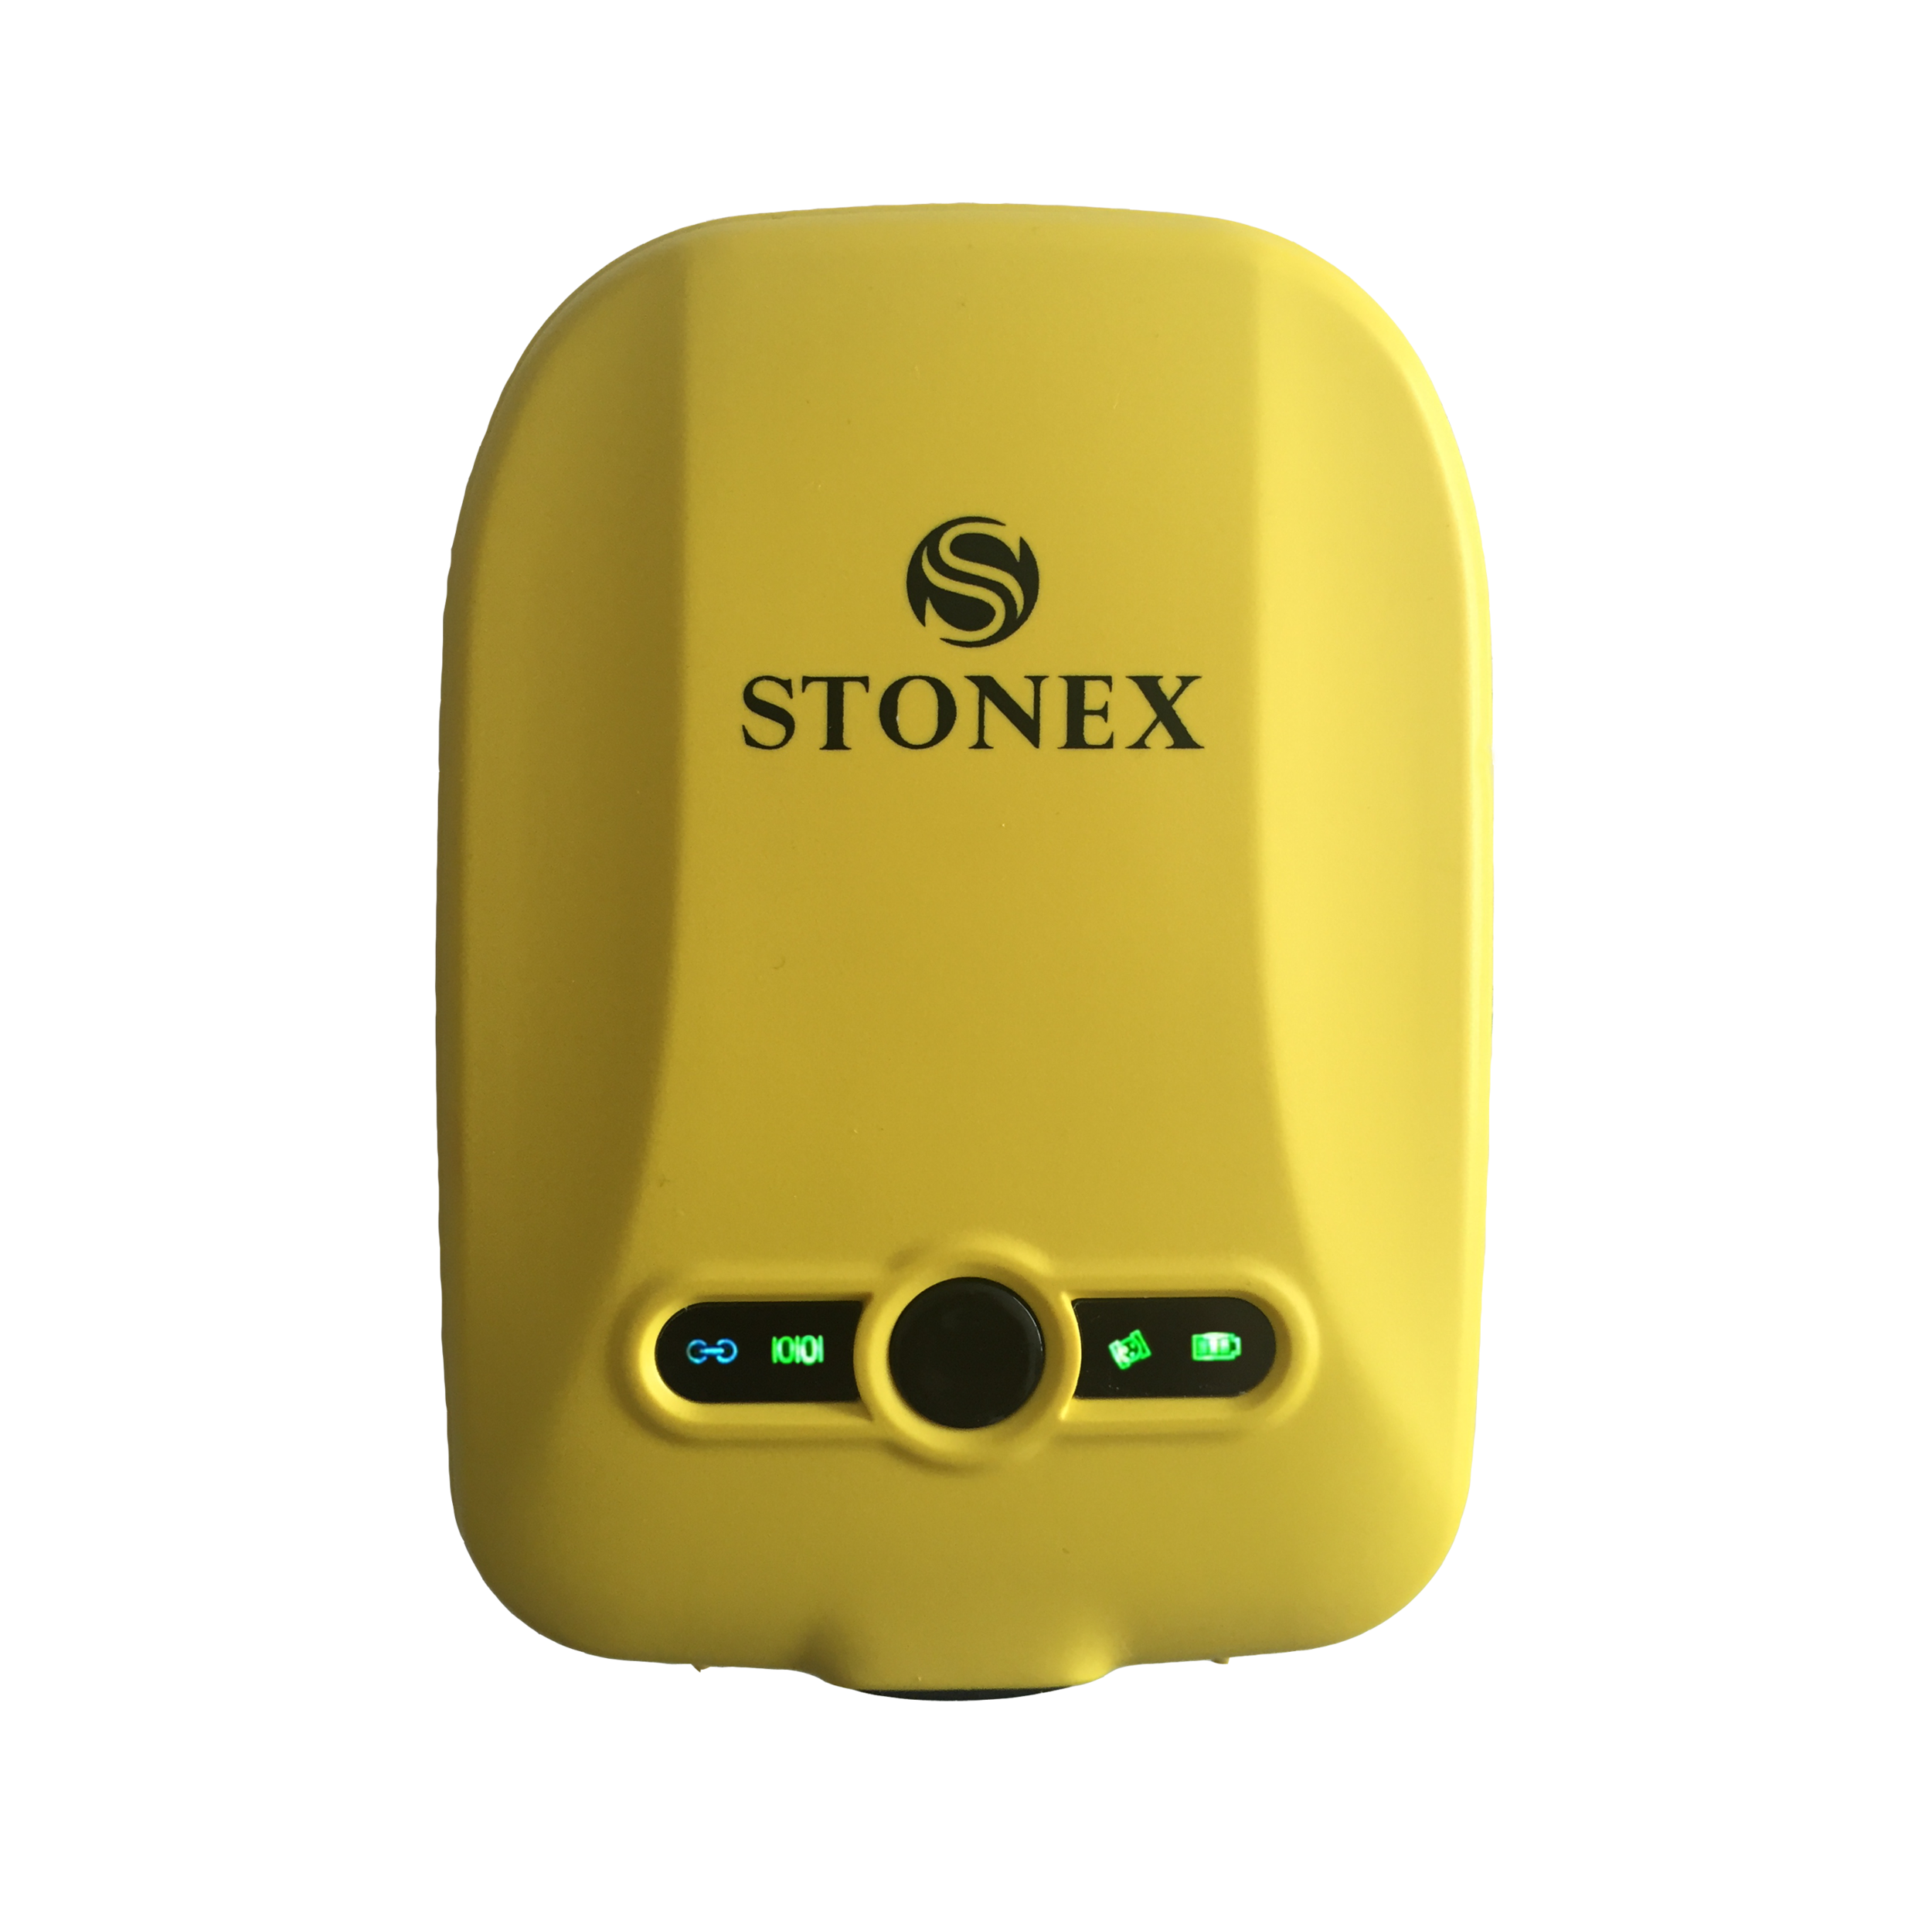 Stonex S5